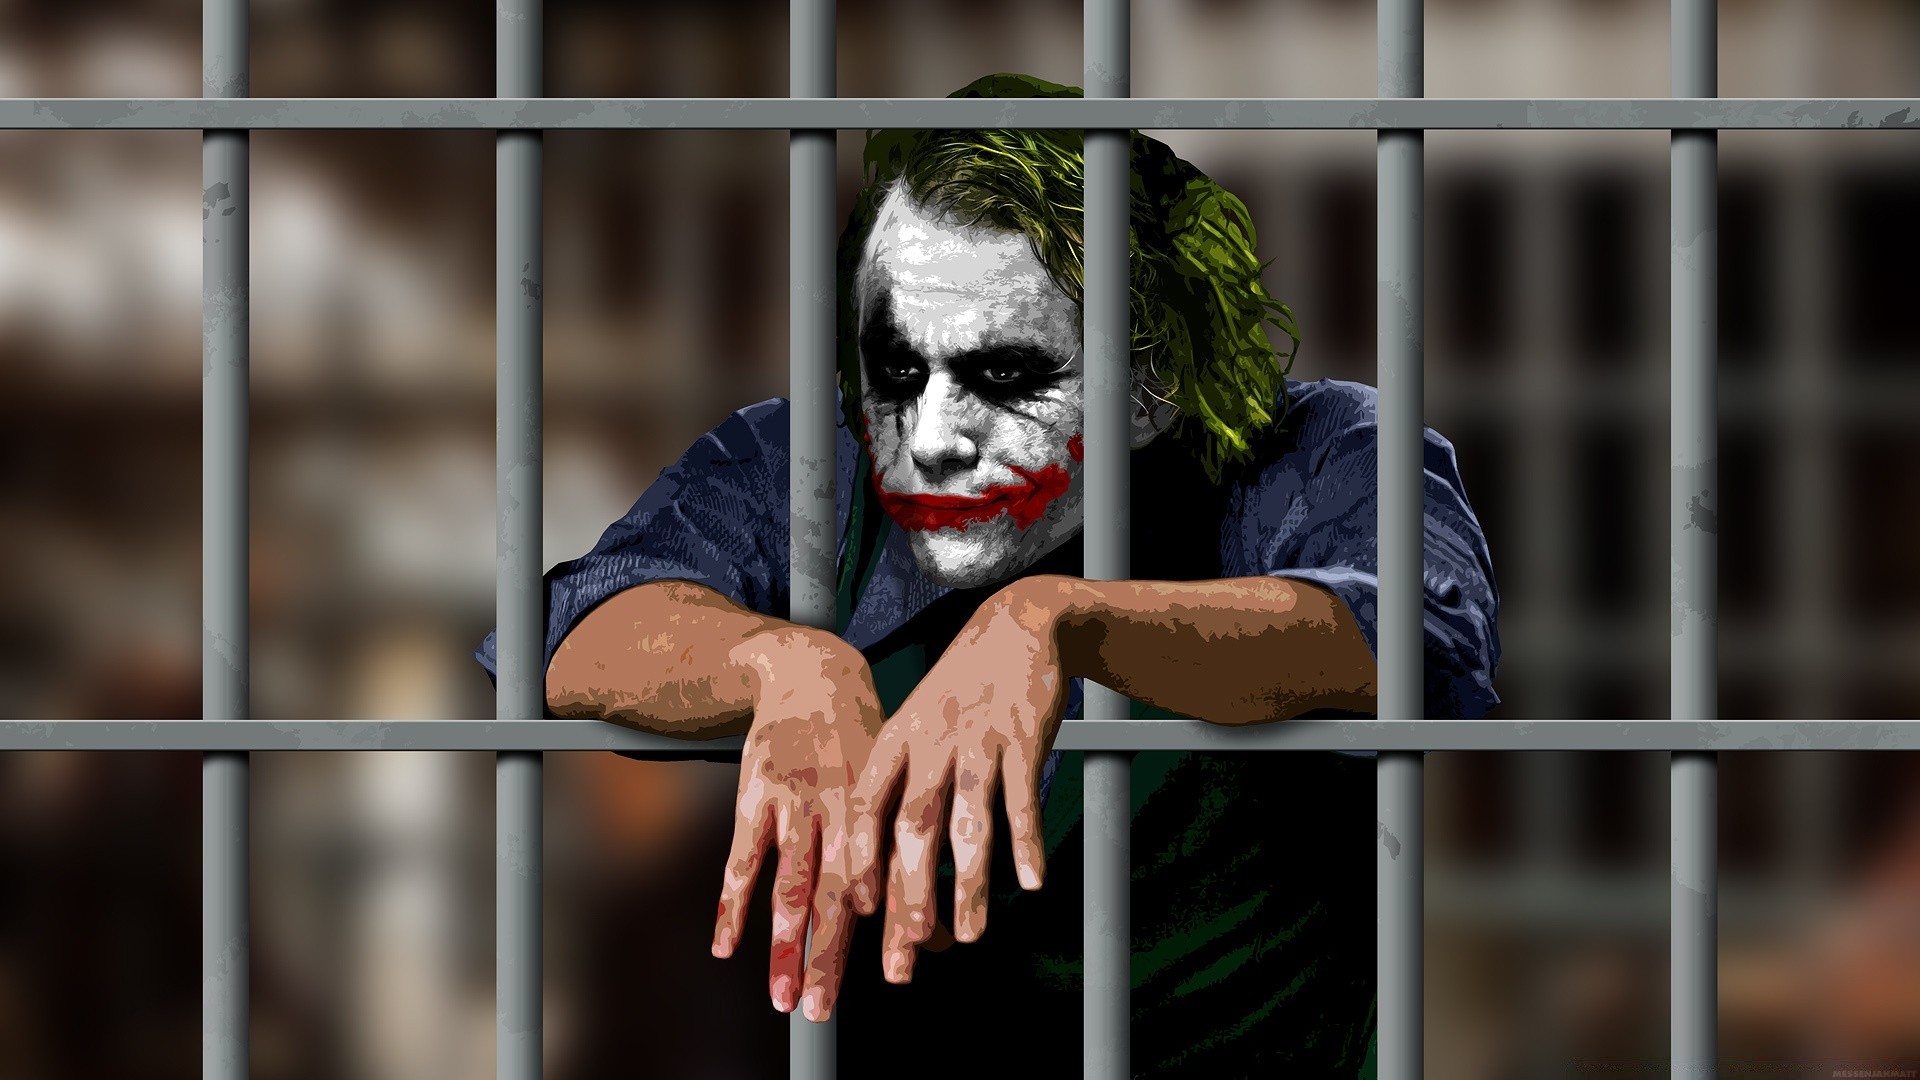 бэтмен клетка тюрьму безопасности один портрет преступление взрослый человек молодой забор в помещении наказание печаль